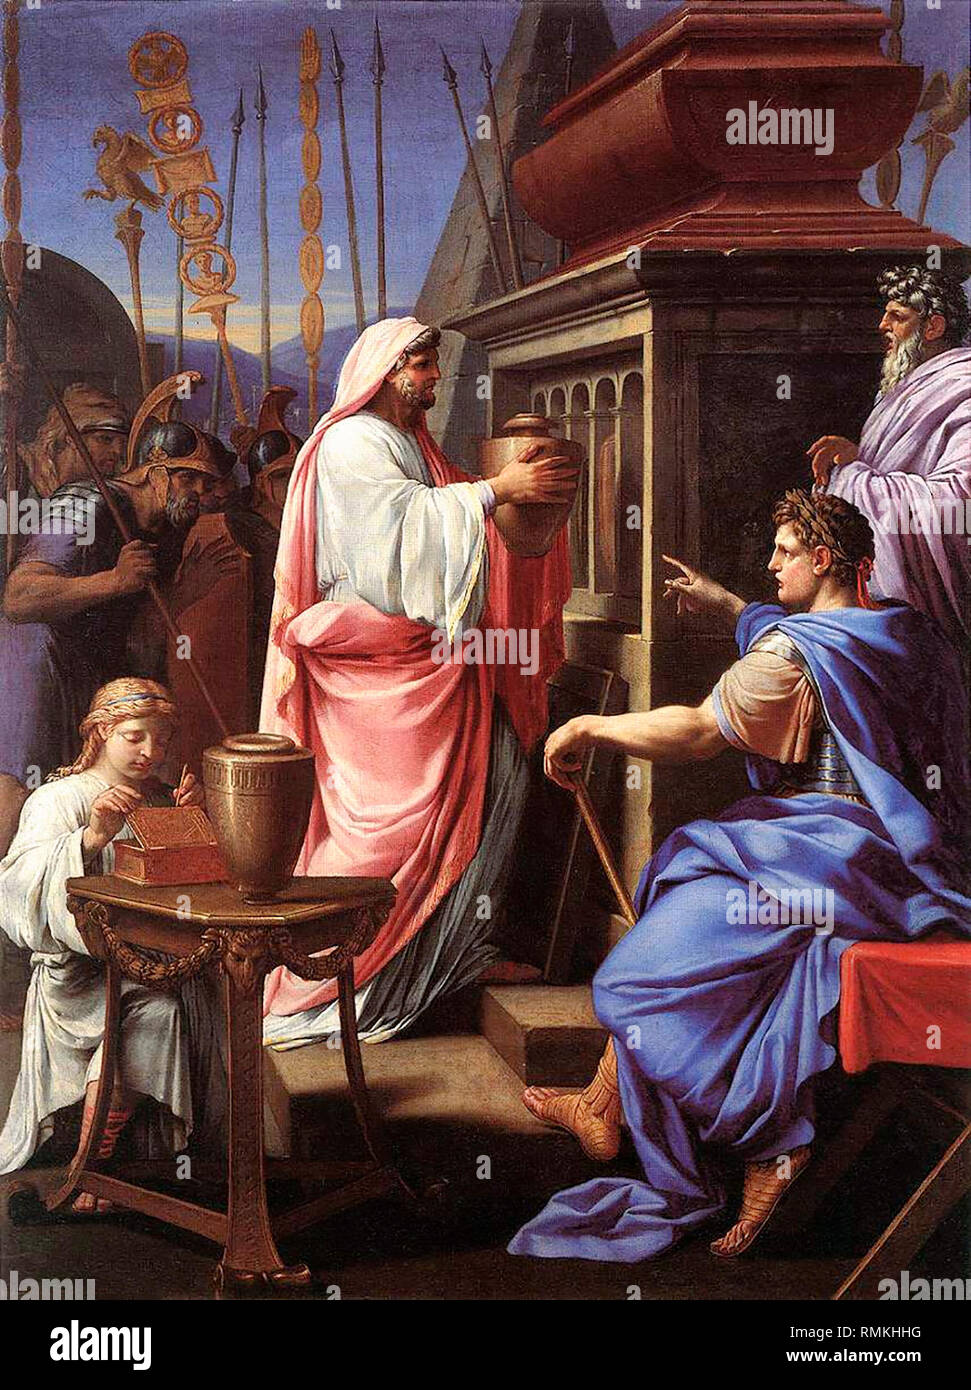 Caligola depositare le ceneri di sua madre e suo fratello nella tomba dei suoi antenati - Eustache Le Sueur Foto Stock